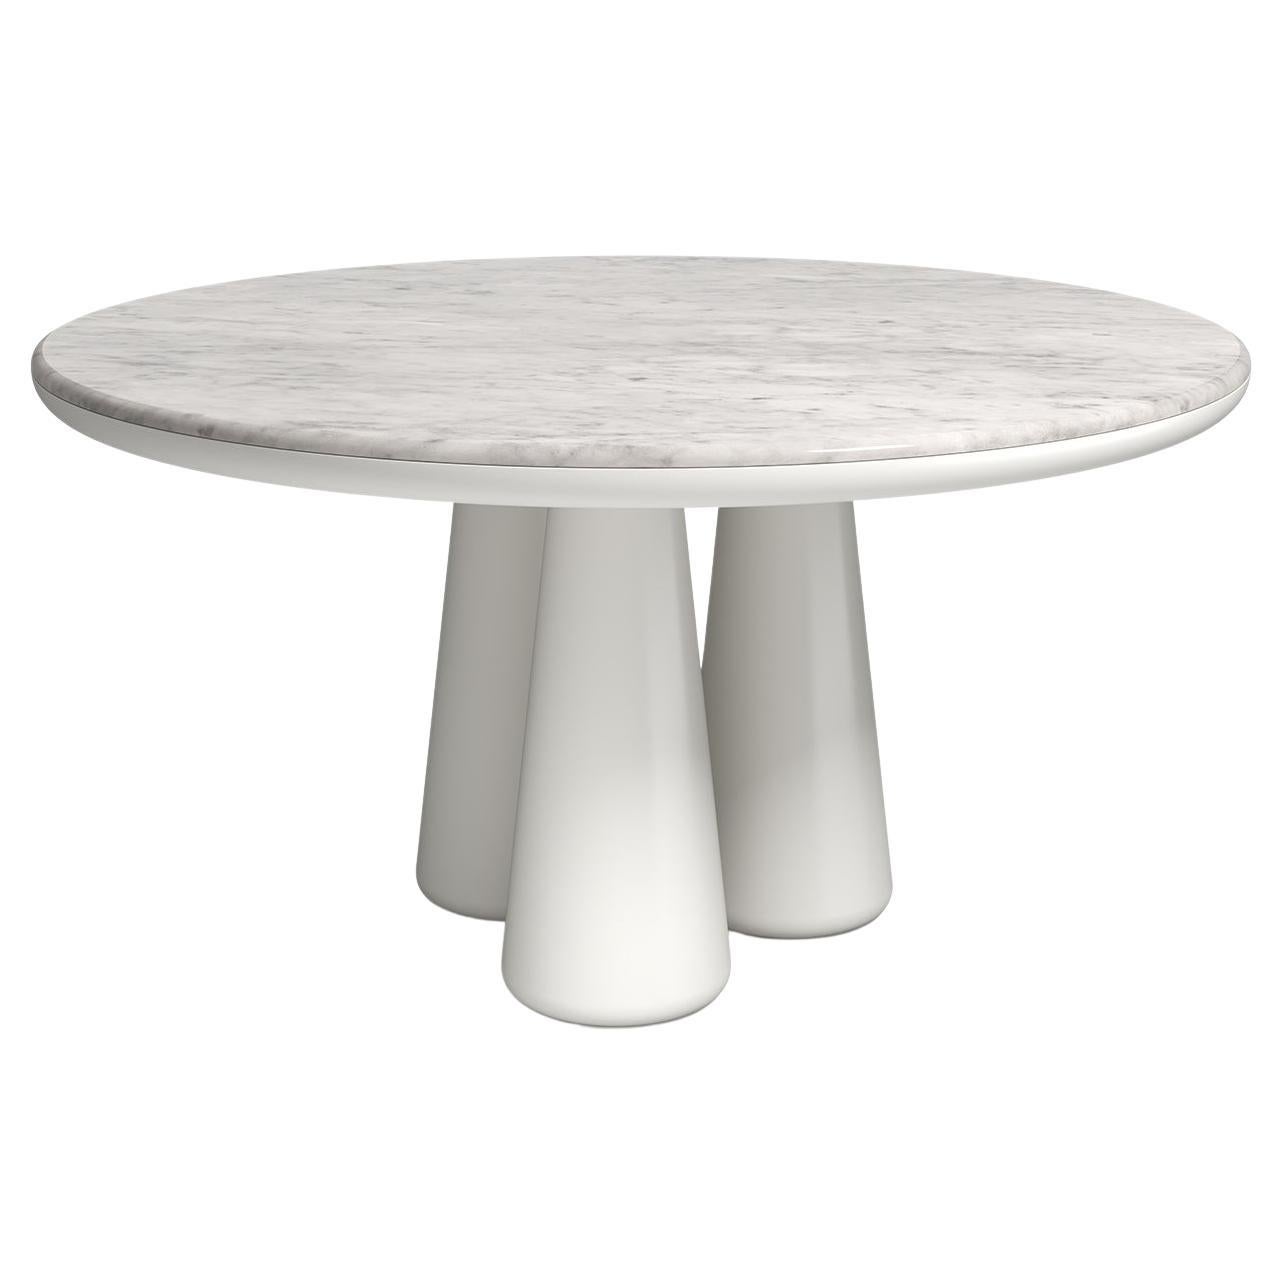 Table Isotopo Design/One, produit par Scapin Collezioni
Édition limitée

Un plateau rond vibrant est associé à une base sculpturale composée de trois supports coniques arrondis qui confèrent au produit une forte tridimensionnalité.
Matériaux : base